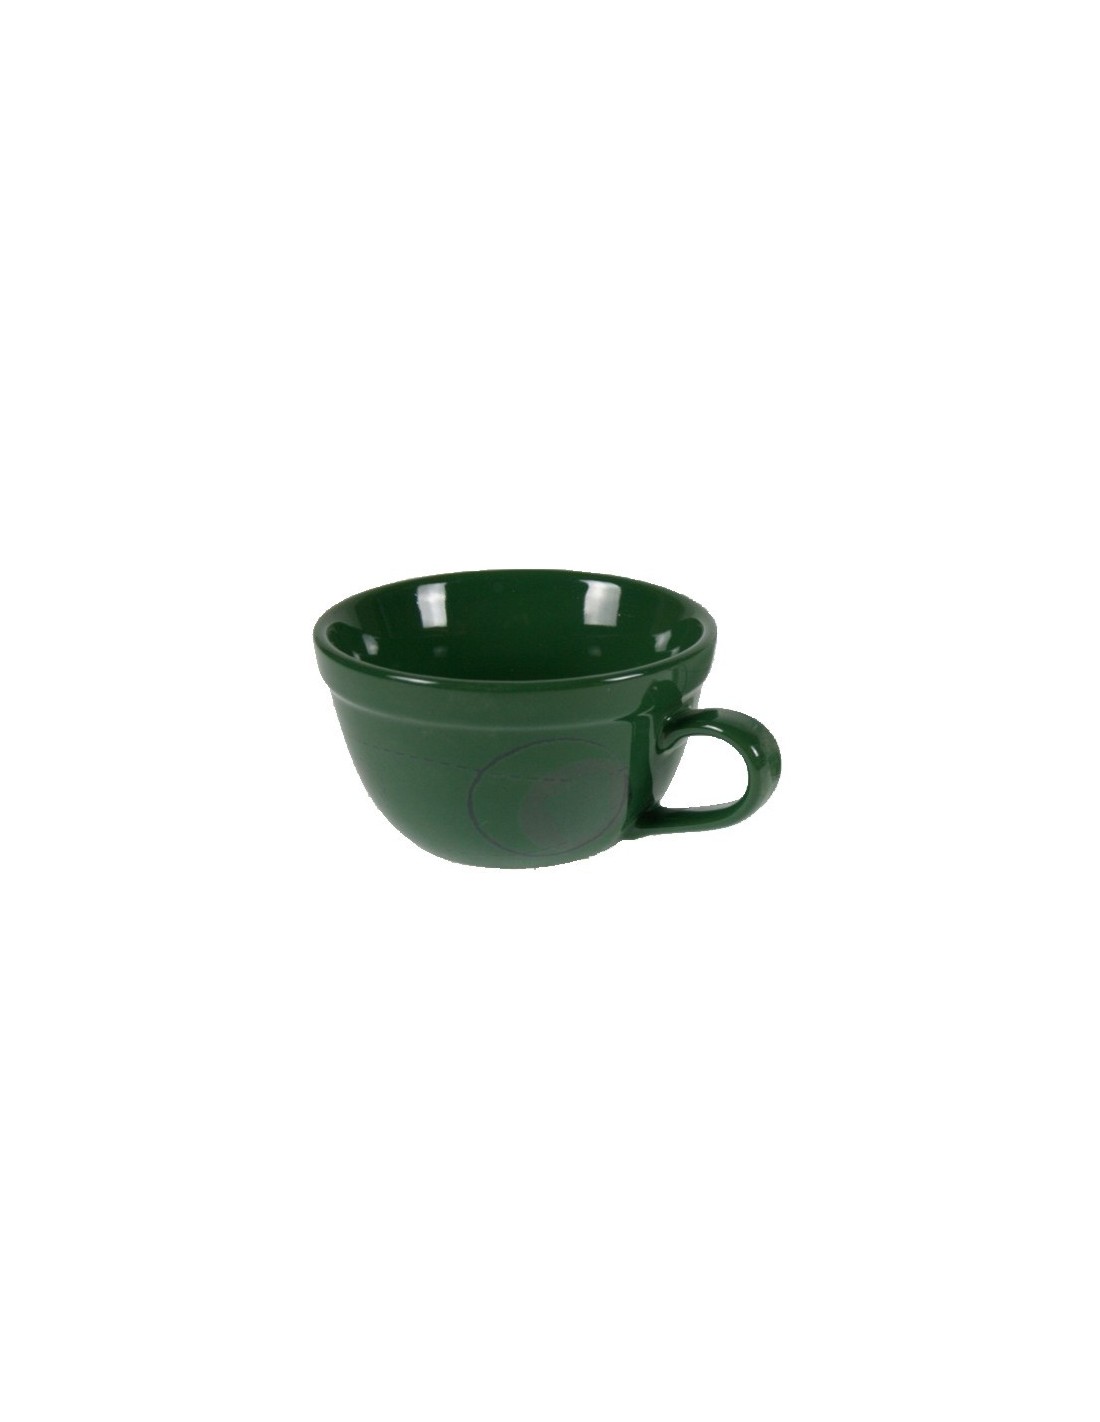 Ttaza cuenco de ceramica color verde para sopa, cereales, pastas, postre servicio de mesa y cocina